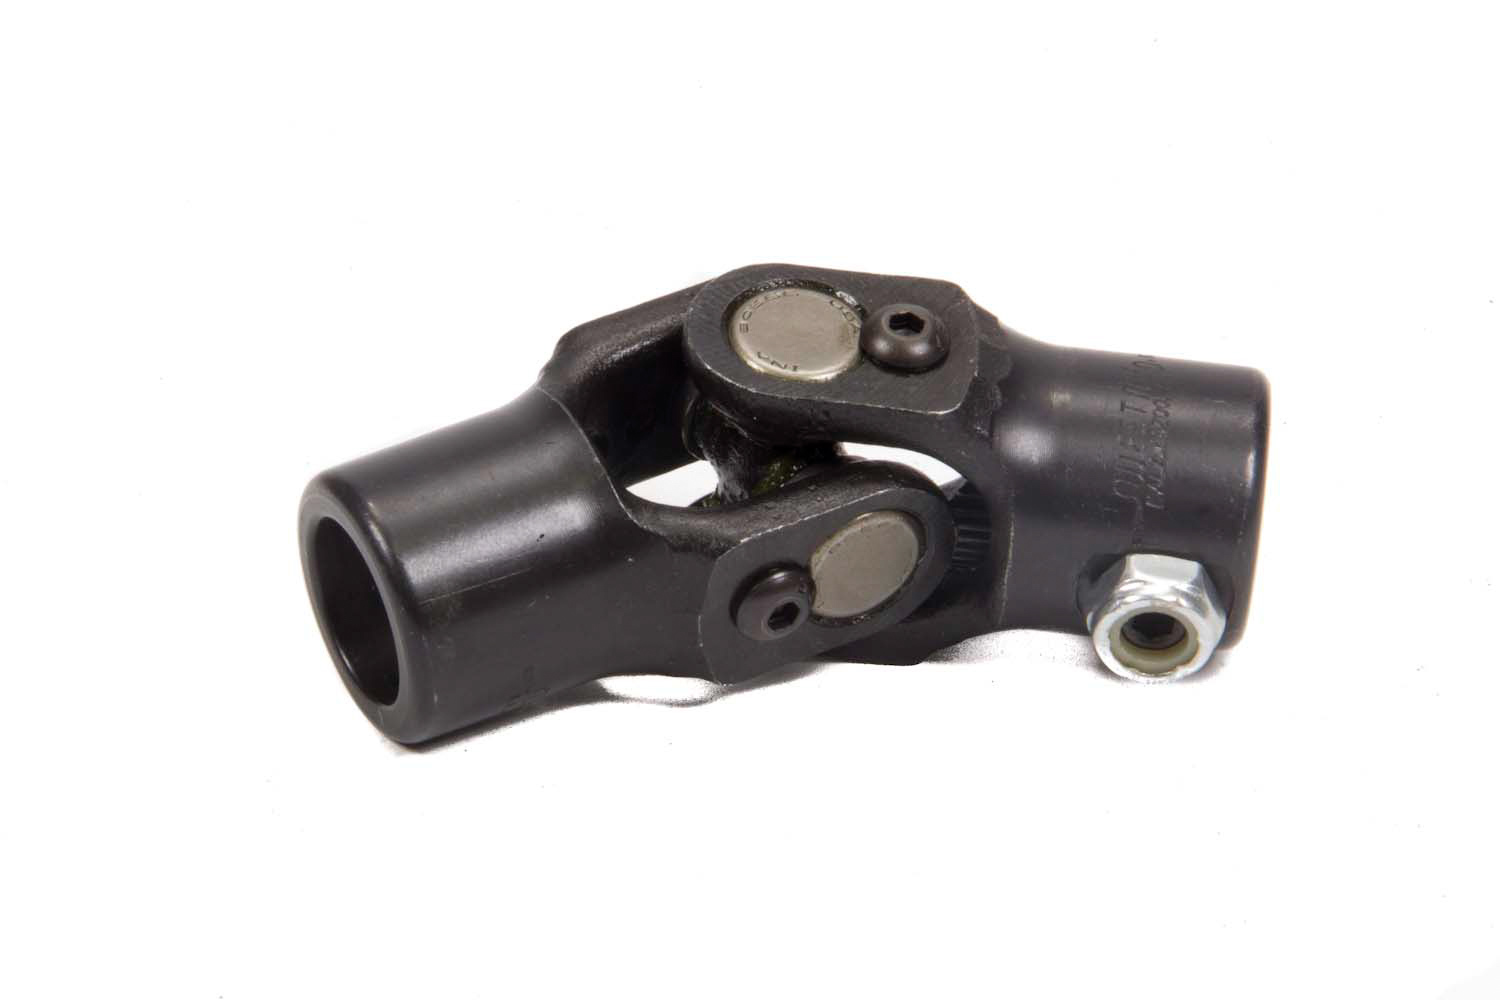 Steering Universal Joint - Single Joint - 3/4 in 36 Spline to 3/4 in 36 Spline - Steel - Black Paint - Each